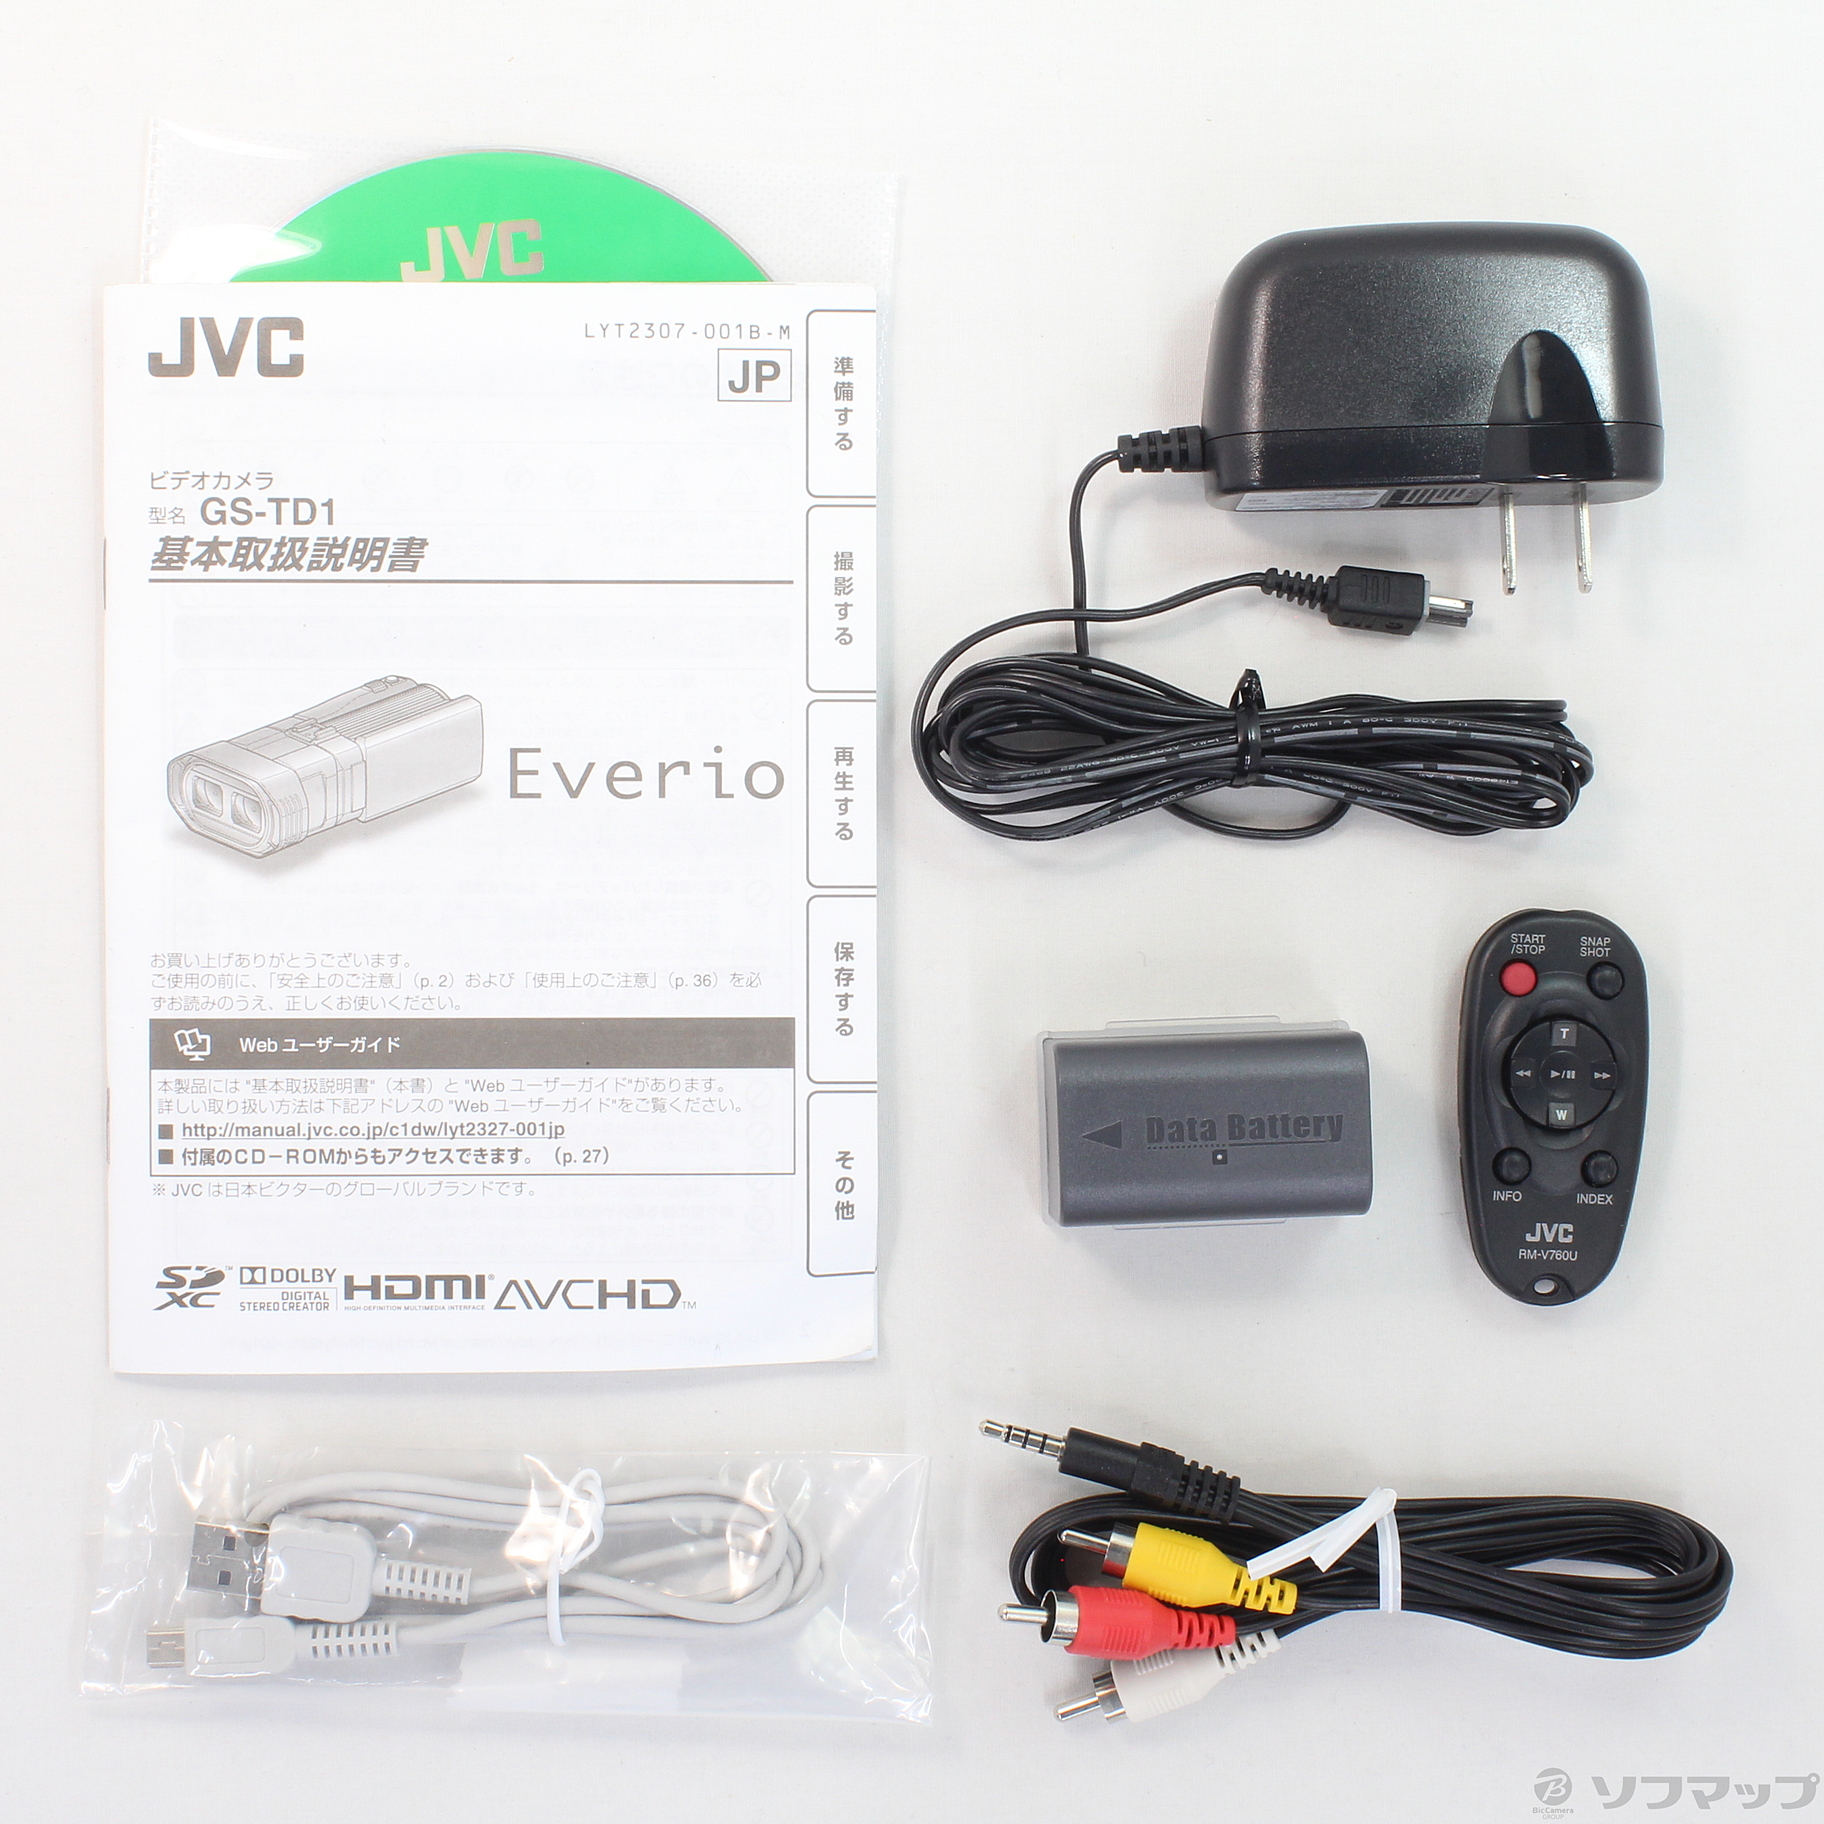 返品無料JVC Everio GS-TD1 3Dビデオカメラ ビデオカメラ